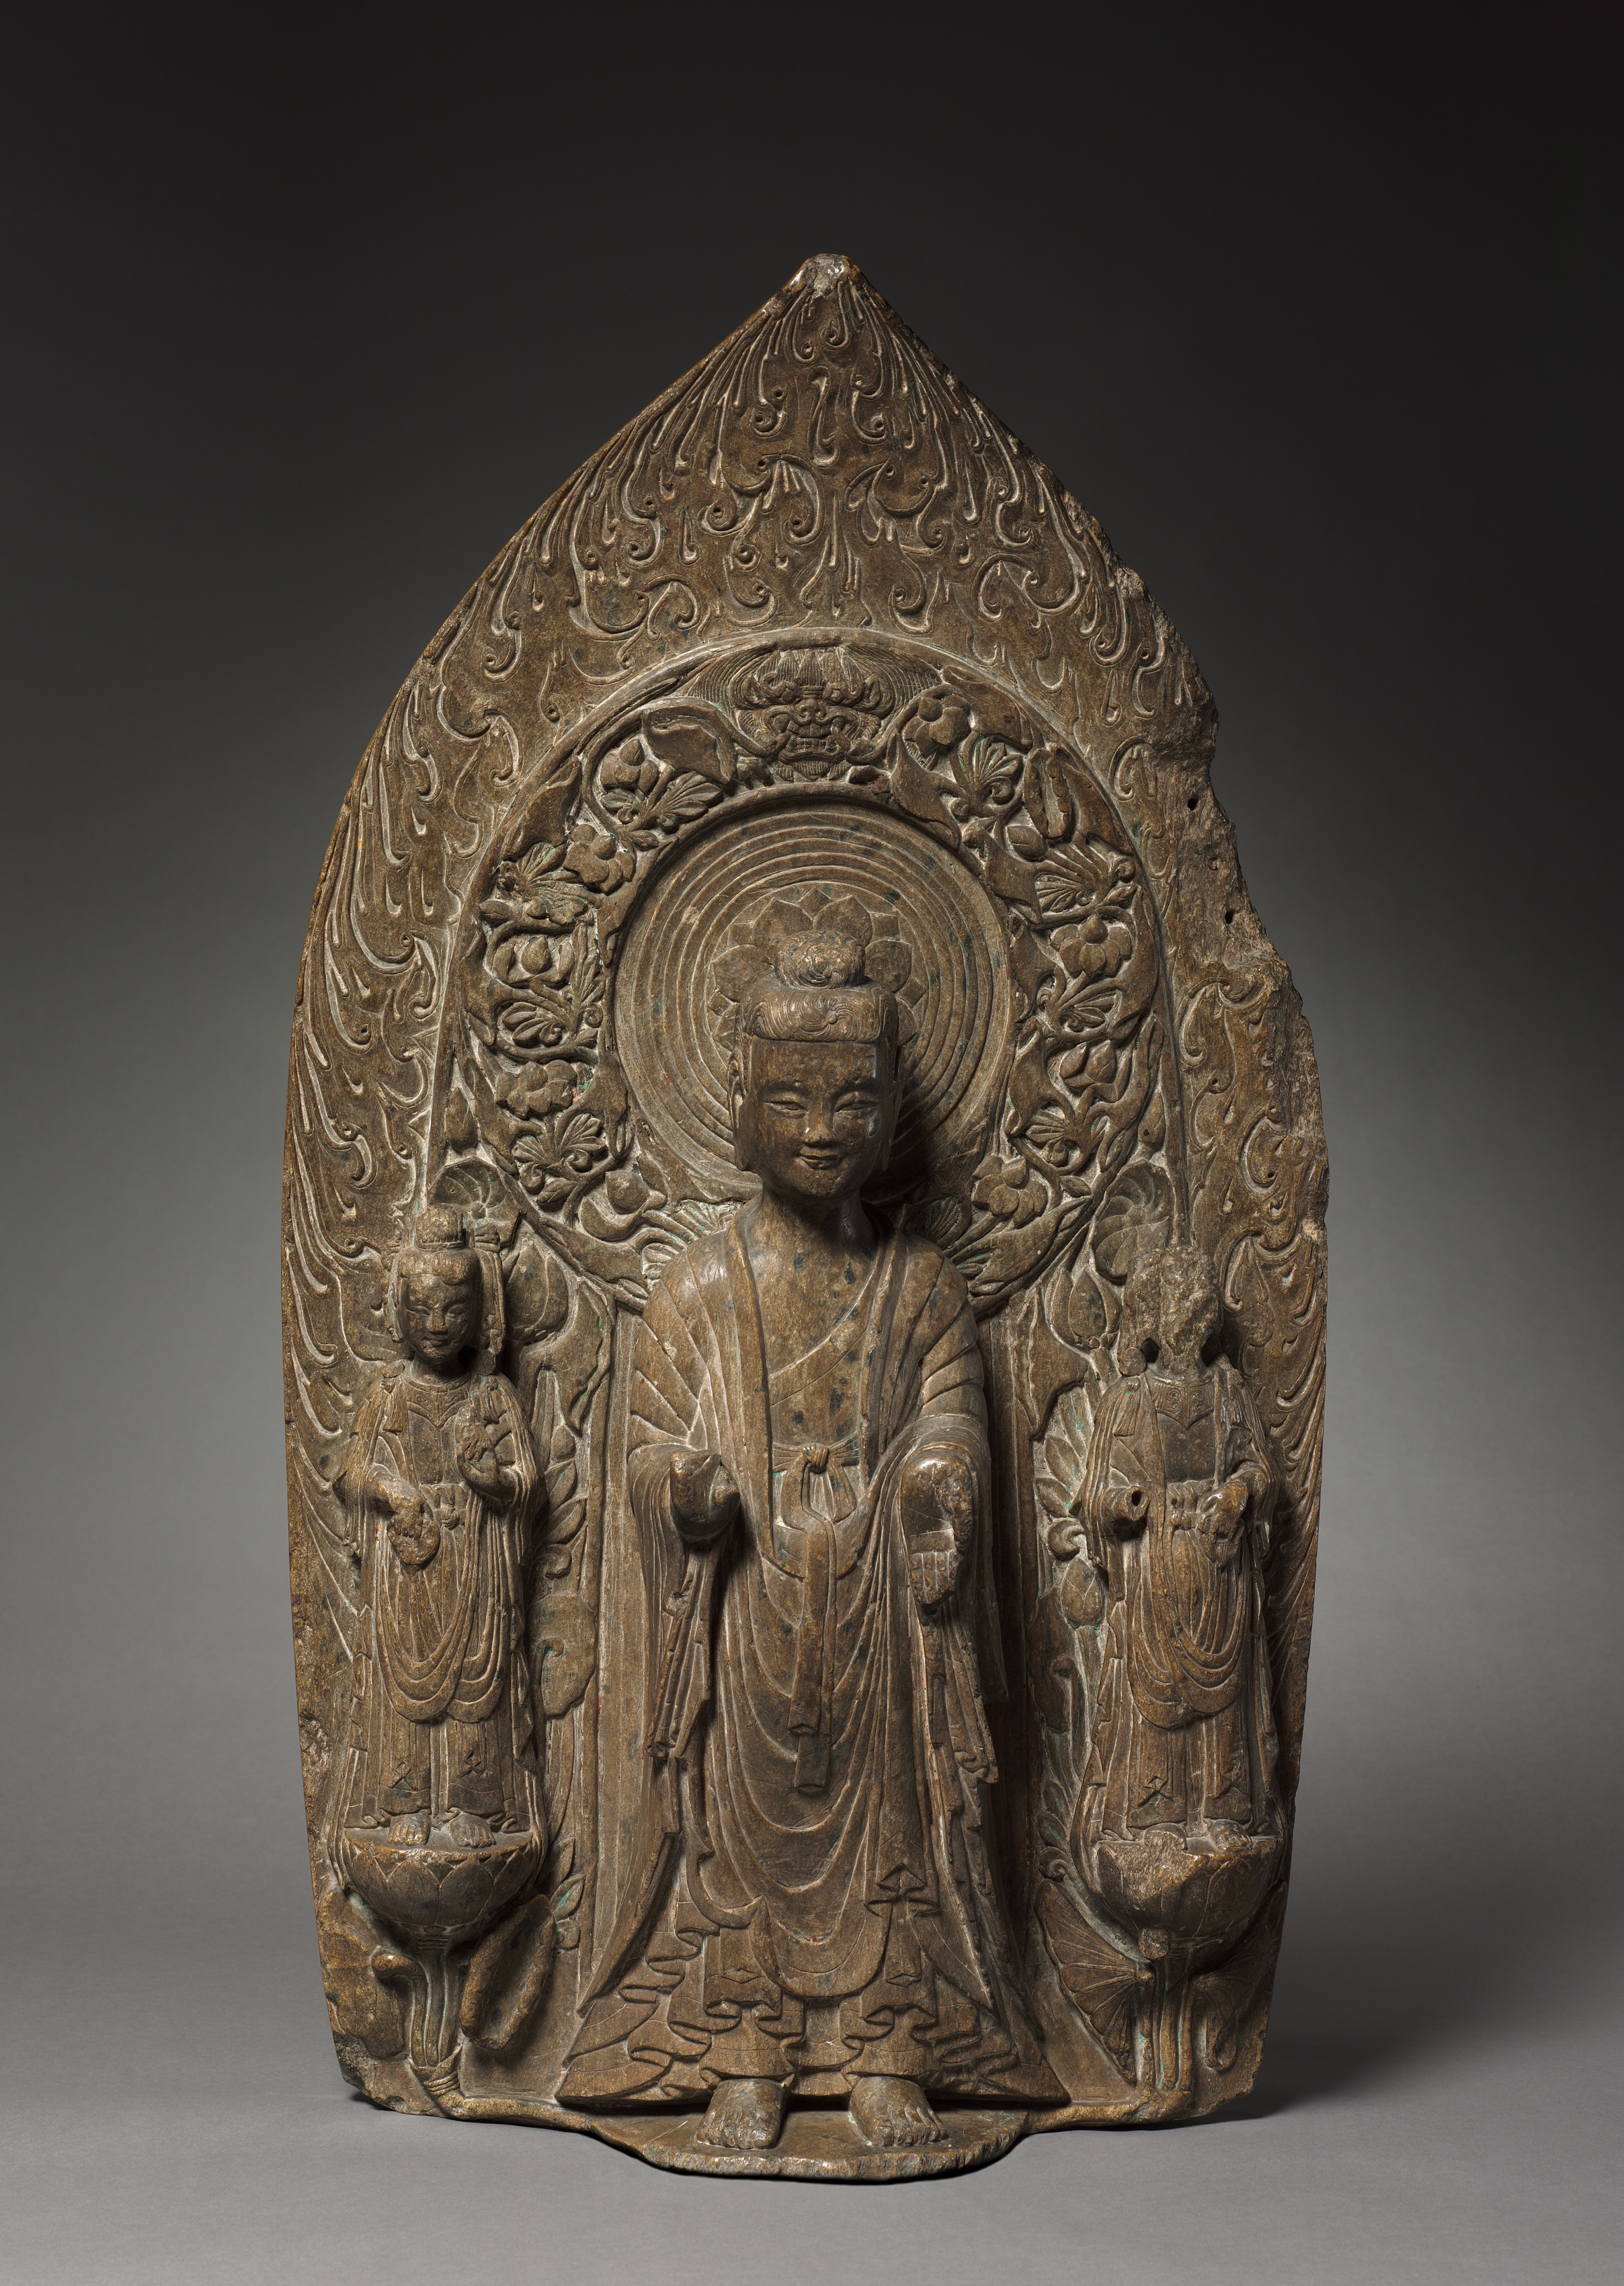 Stele with Sakyamuni and Bodhisattvas